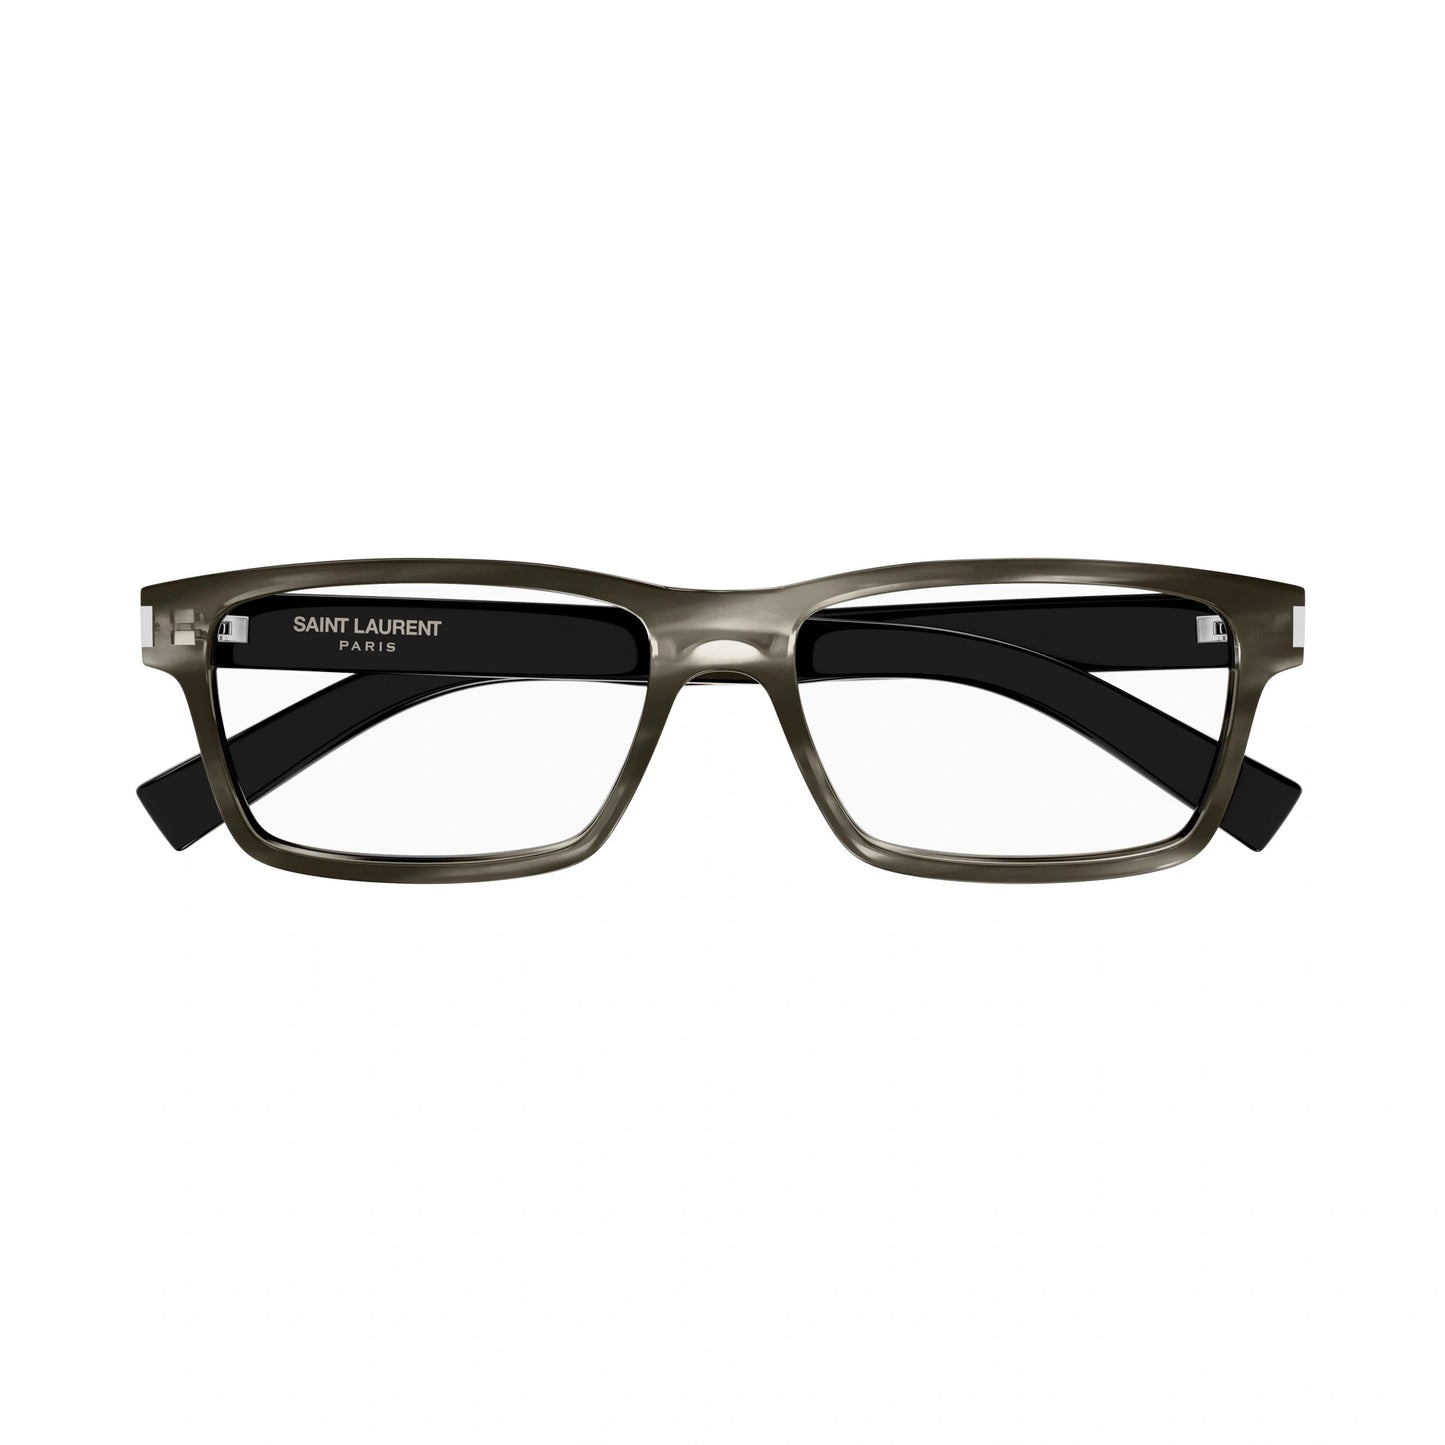 Yvest Saint Laurent SL-622-005 56mm New Eyeglasses